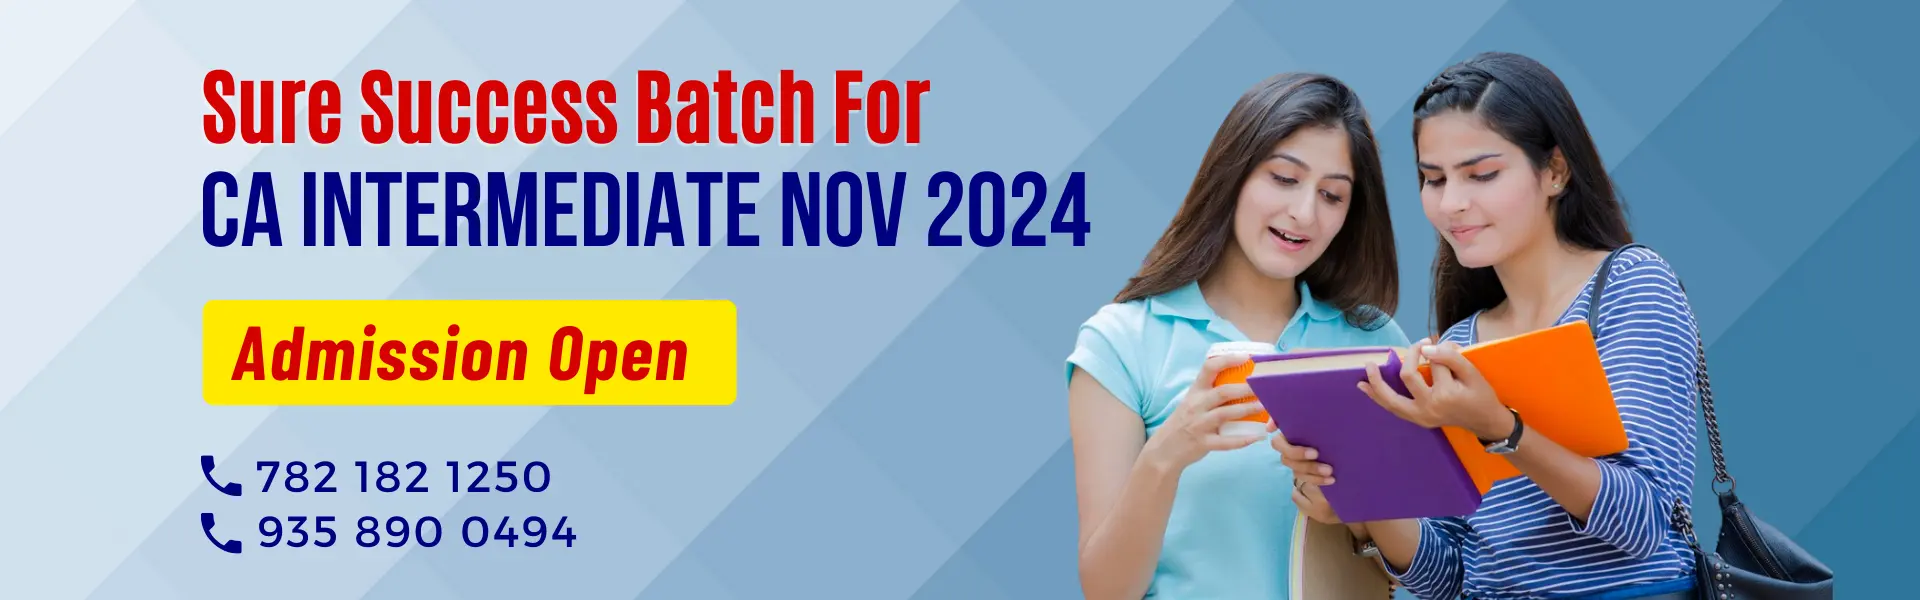 CA Intermediate Sure Success Batch for Nov 2024 Exams 